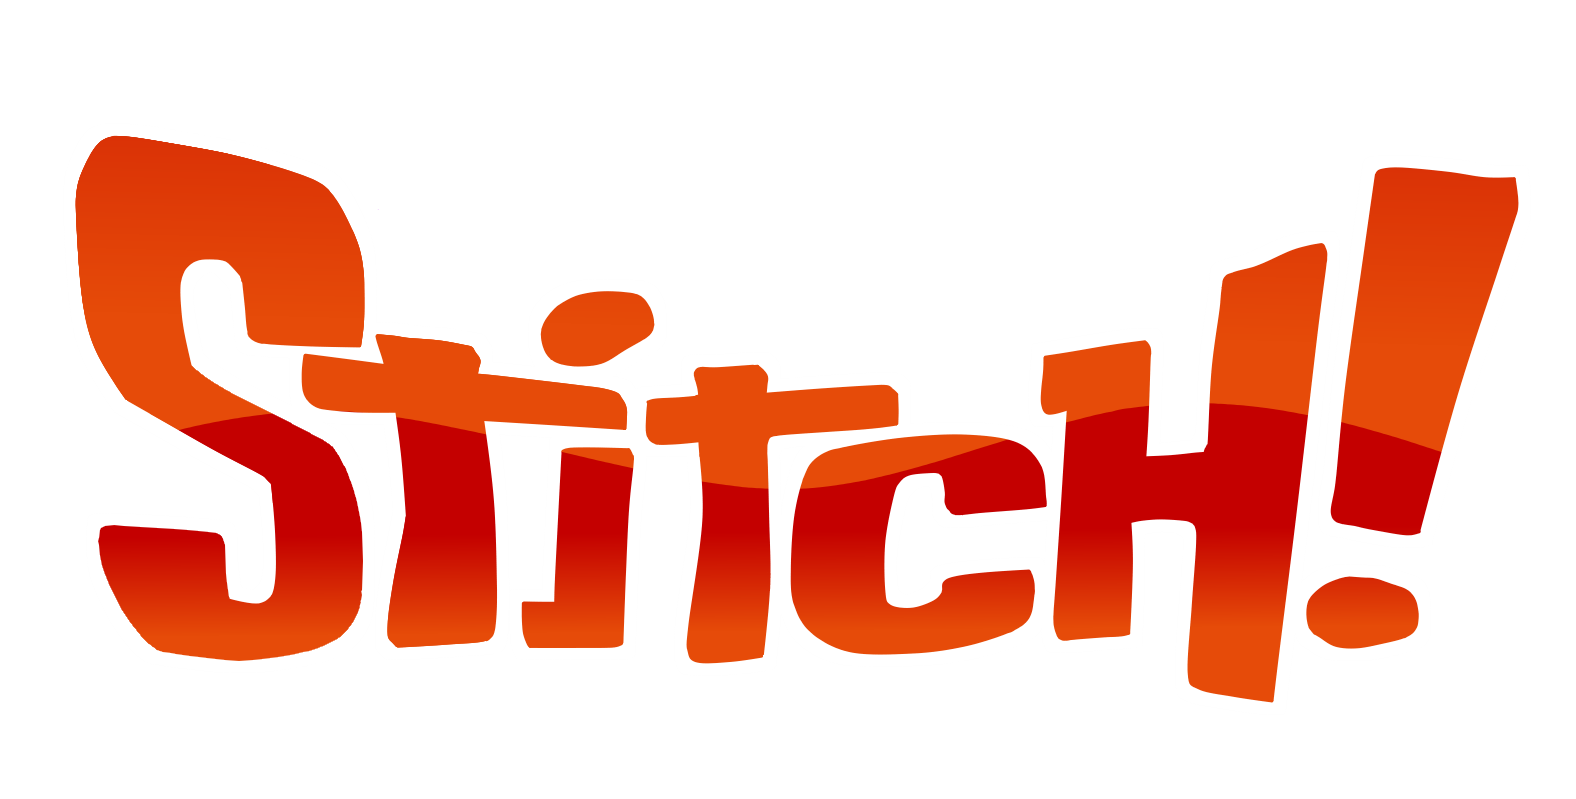 Stitch Text Lilo Logo Pelekai Brand PNG Image